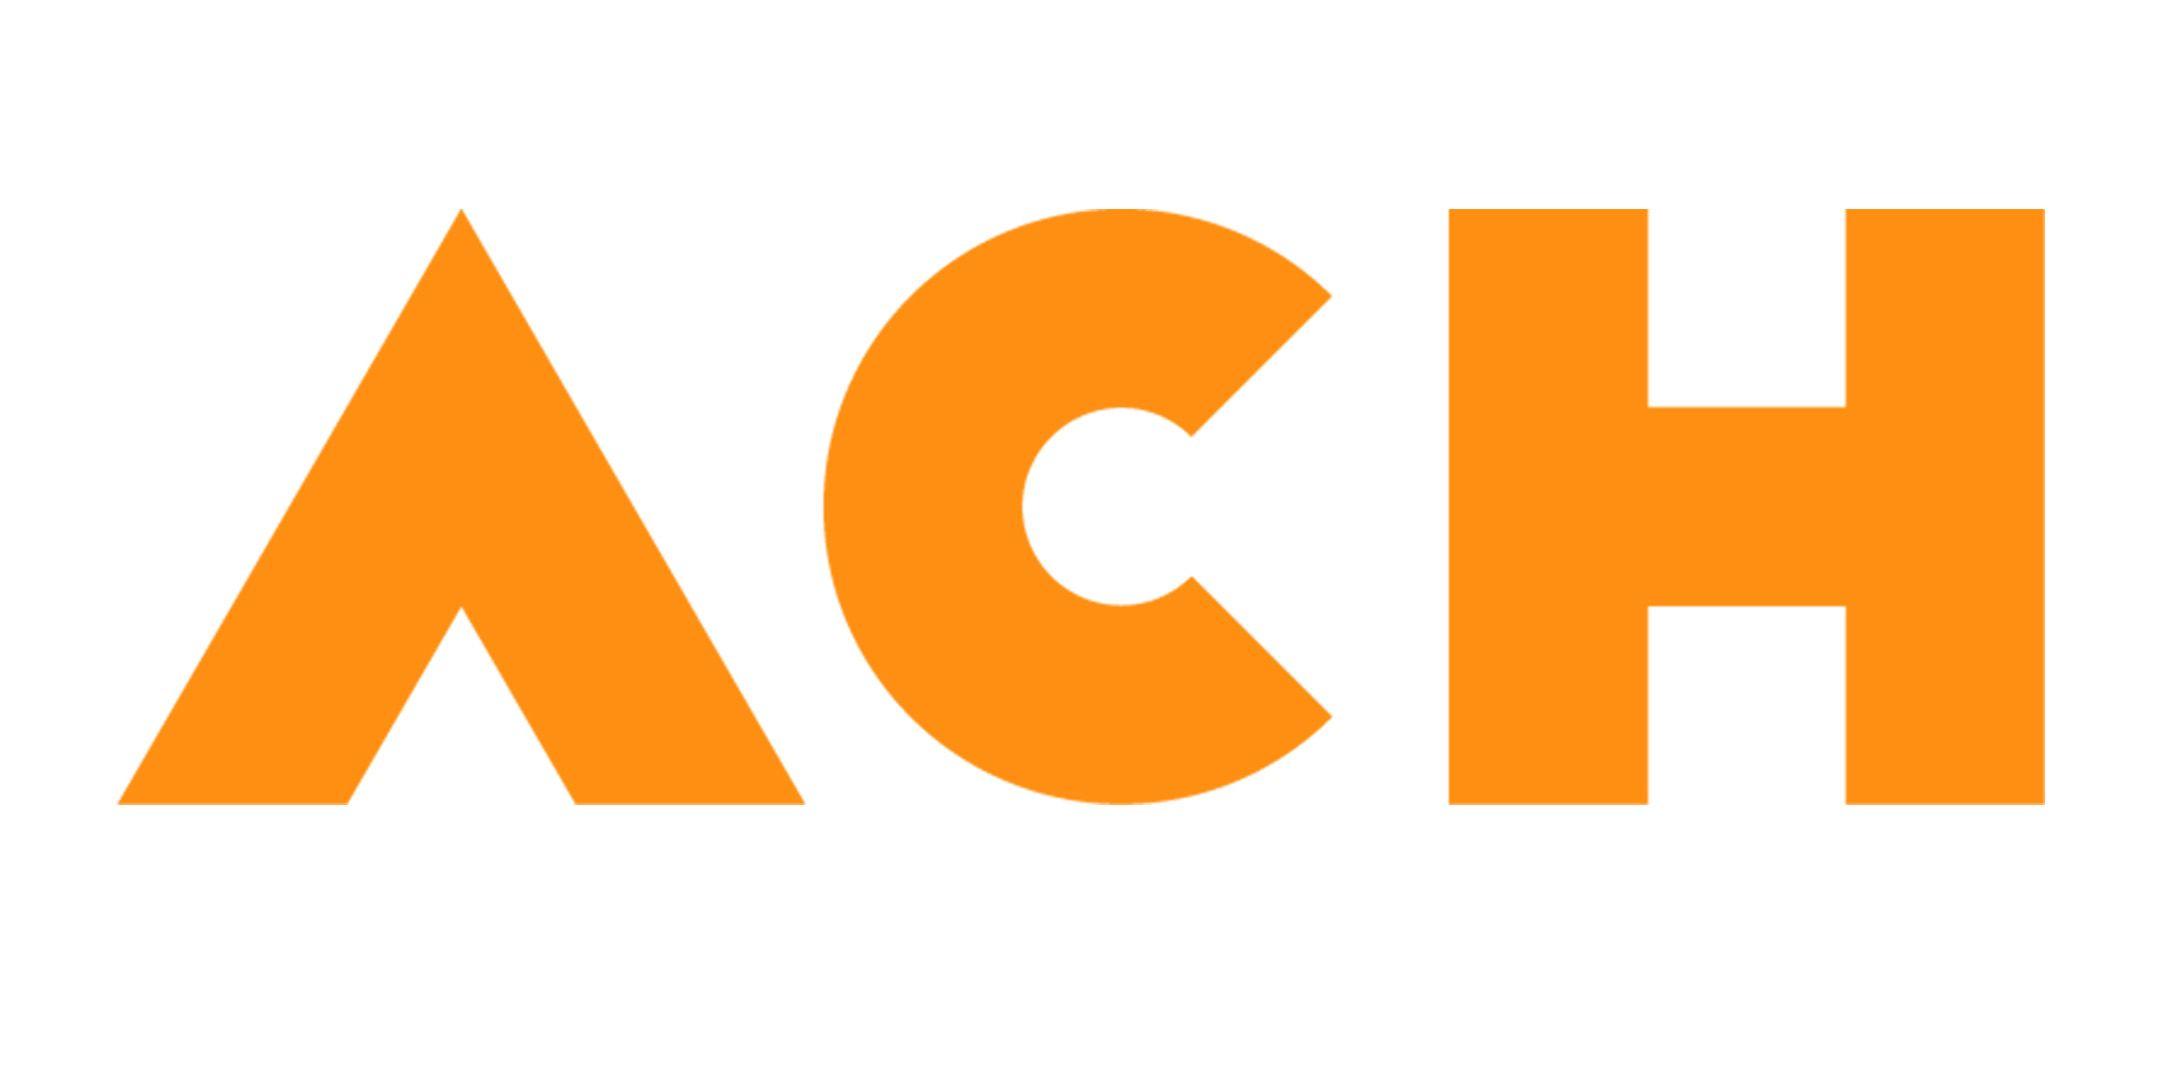 ACH Logo - Ashley Community Housing has evolved